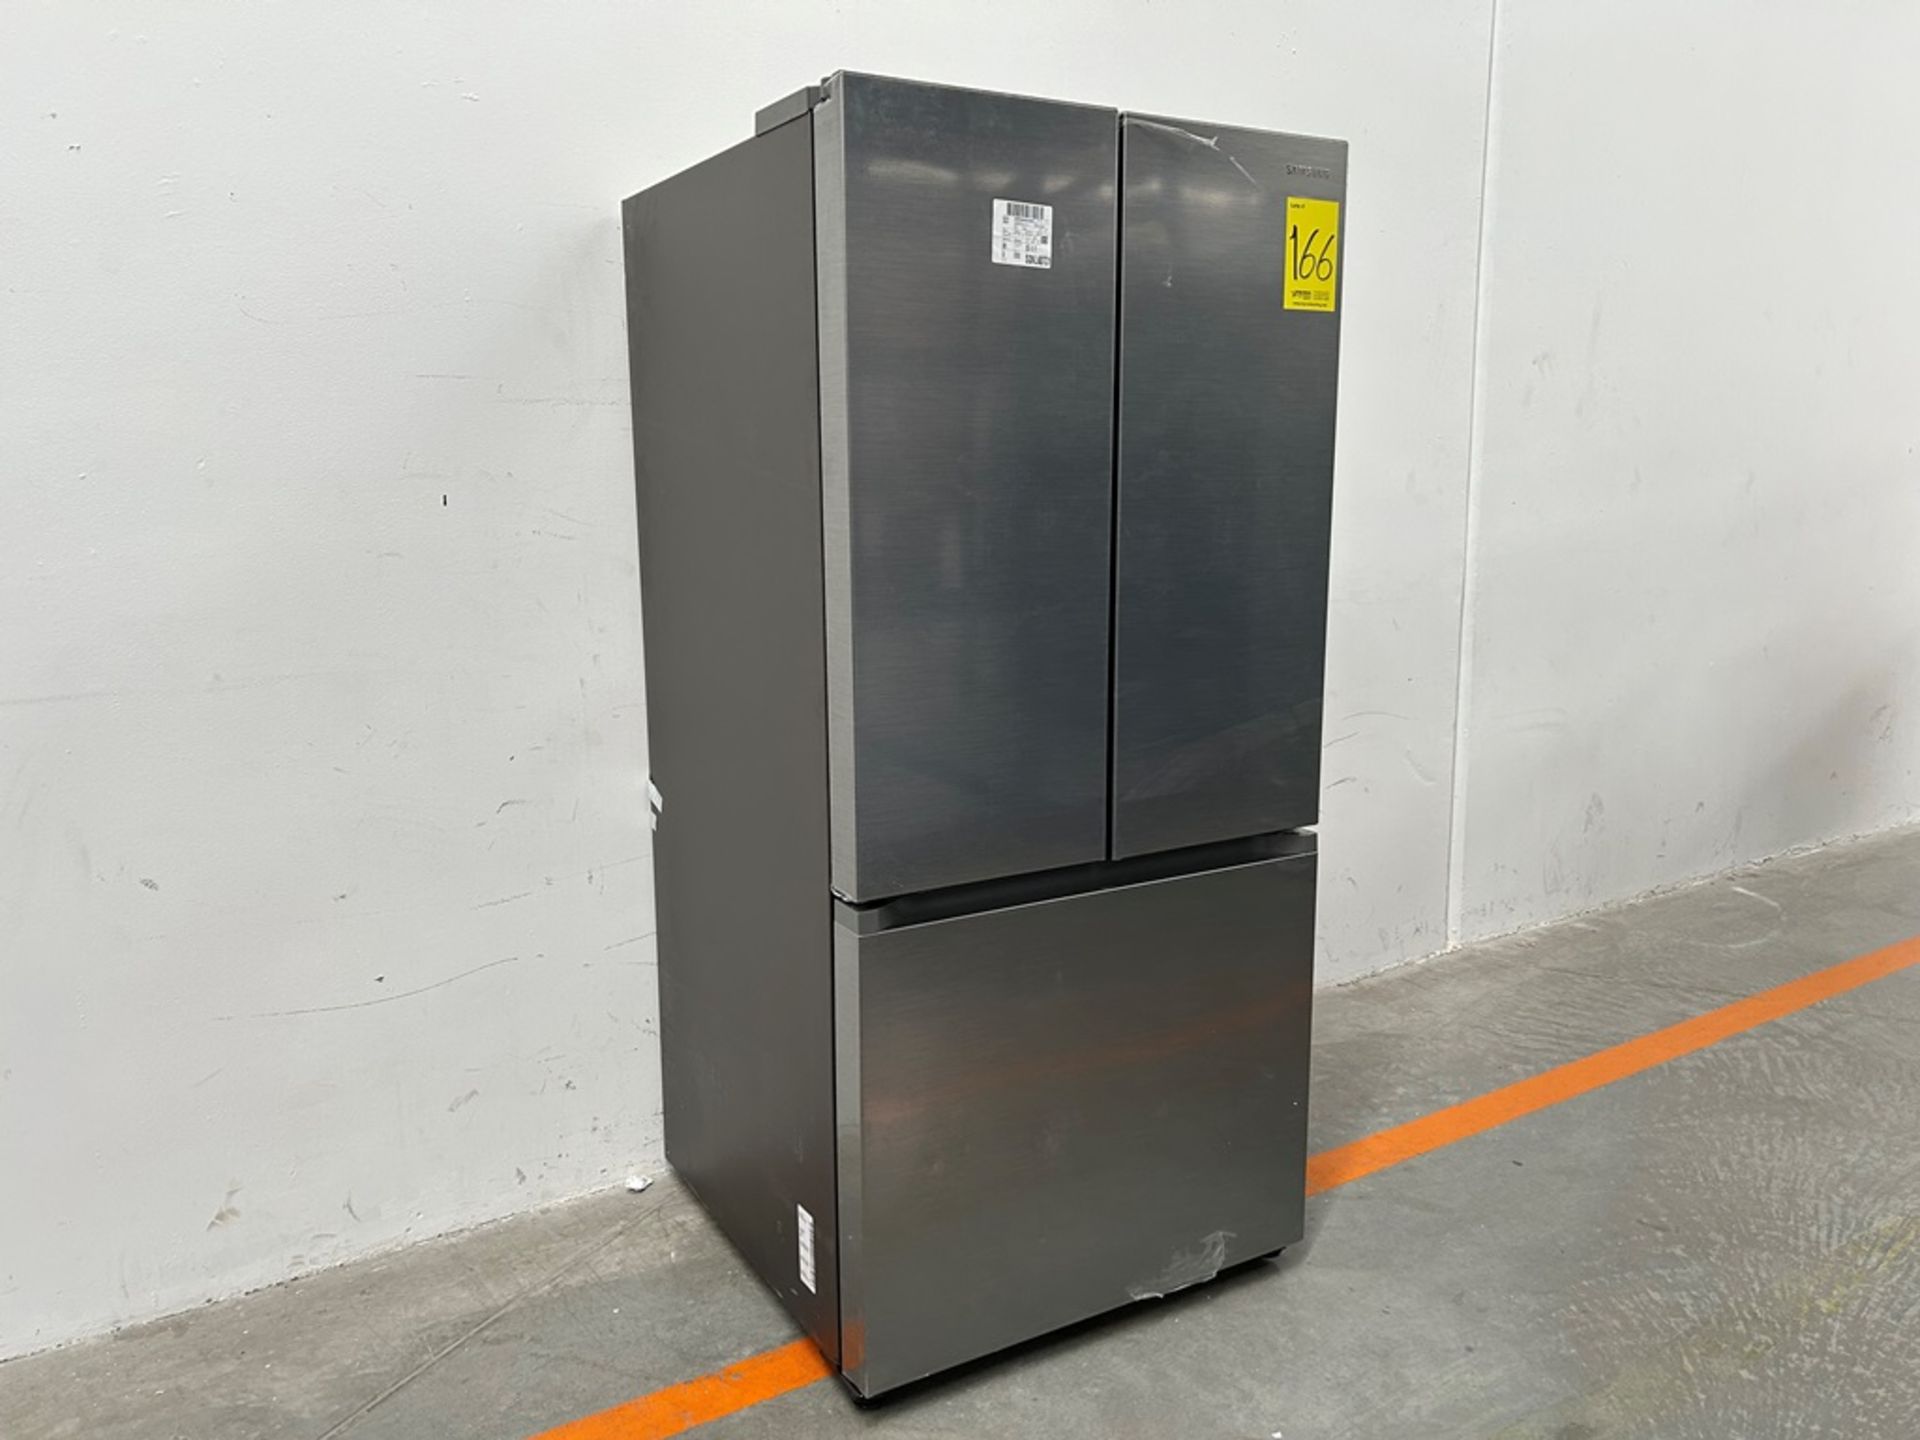 (NUEVO) Refrigerador Marca SAMSUNG, Modelo RF25C5151S9, Serie 01153L, Color GRIS - Image 2 of 11